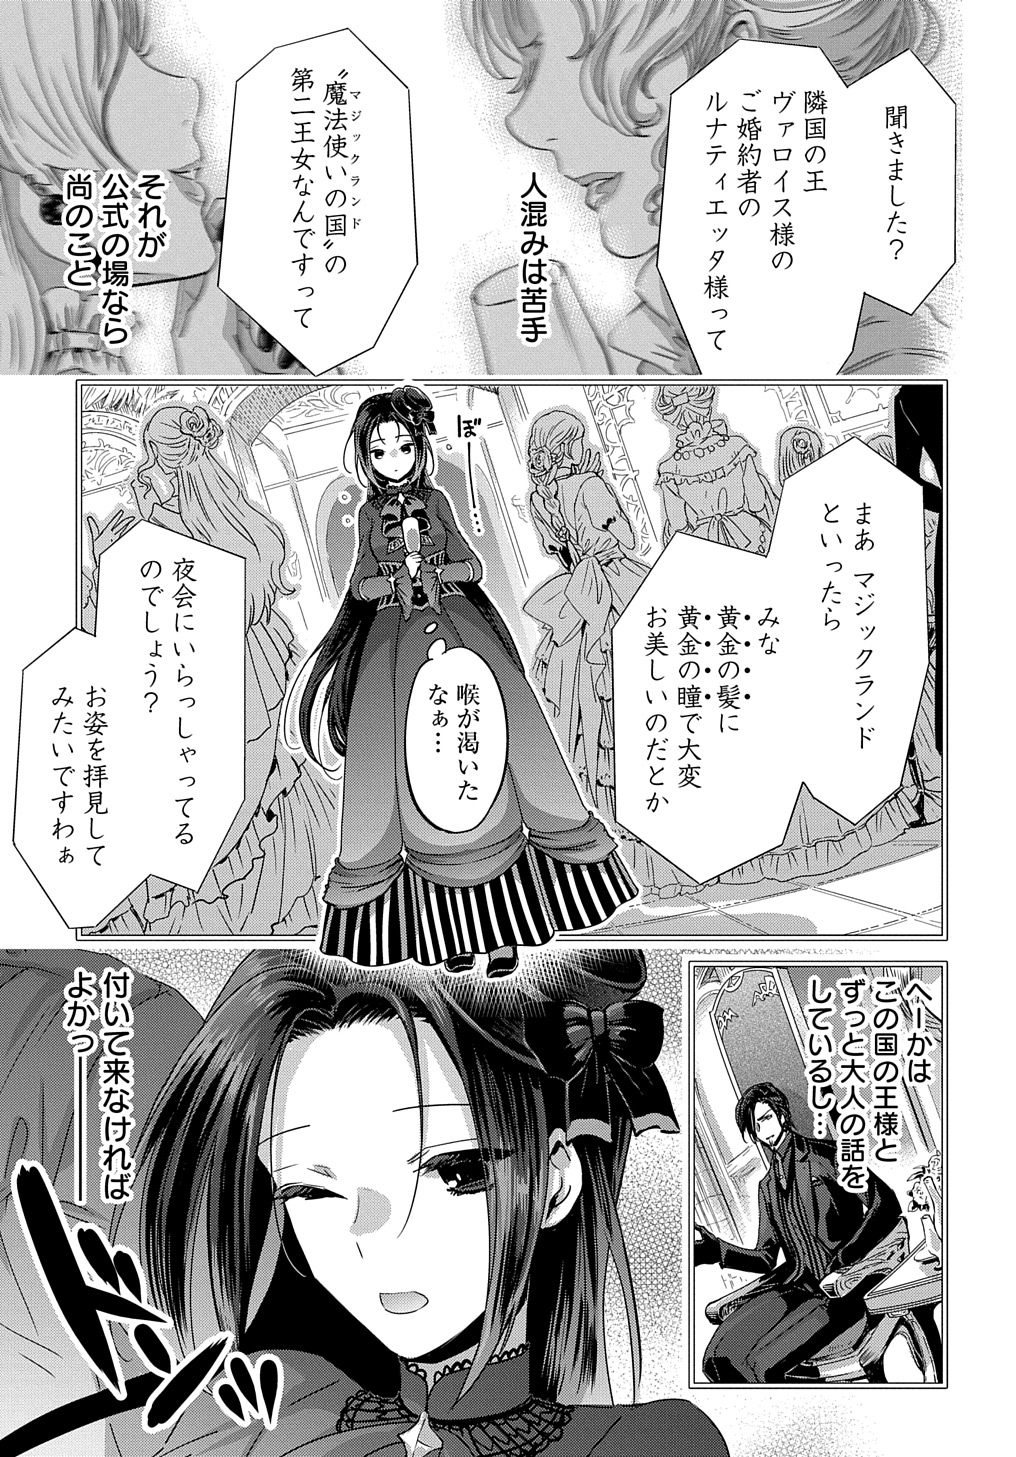 Konyakusha no Uwaki Genba wo Michatta no de Hajimari no Kane ga narimashita - Chapter 9 - Page 1